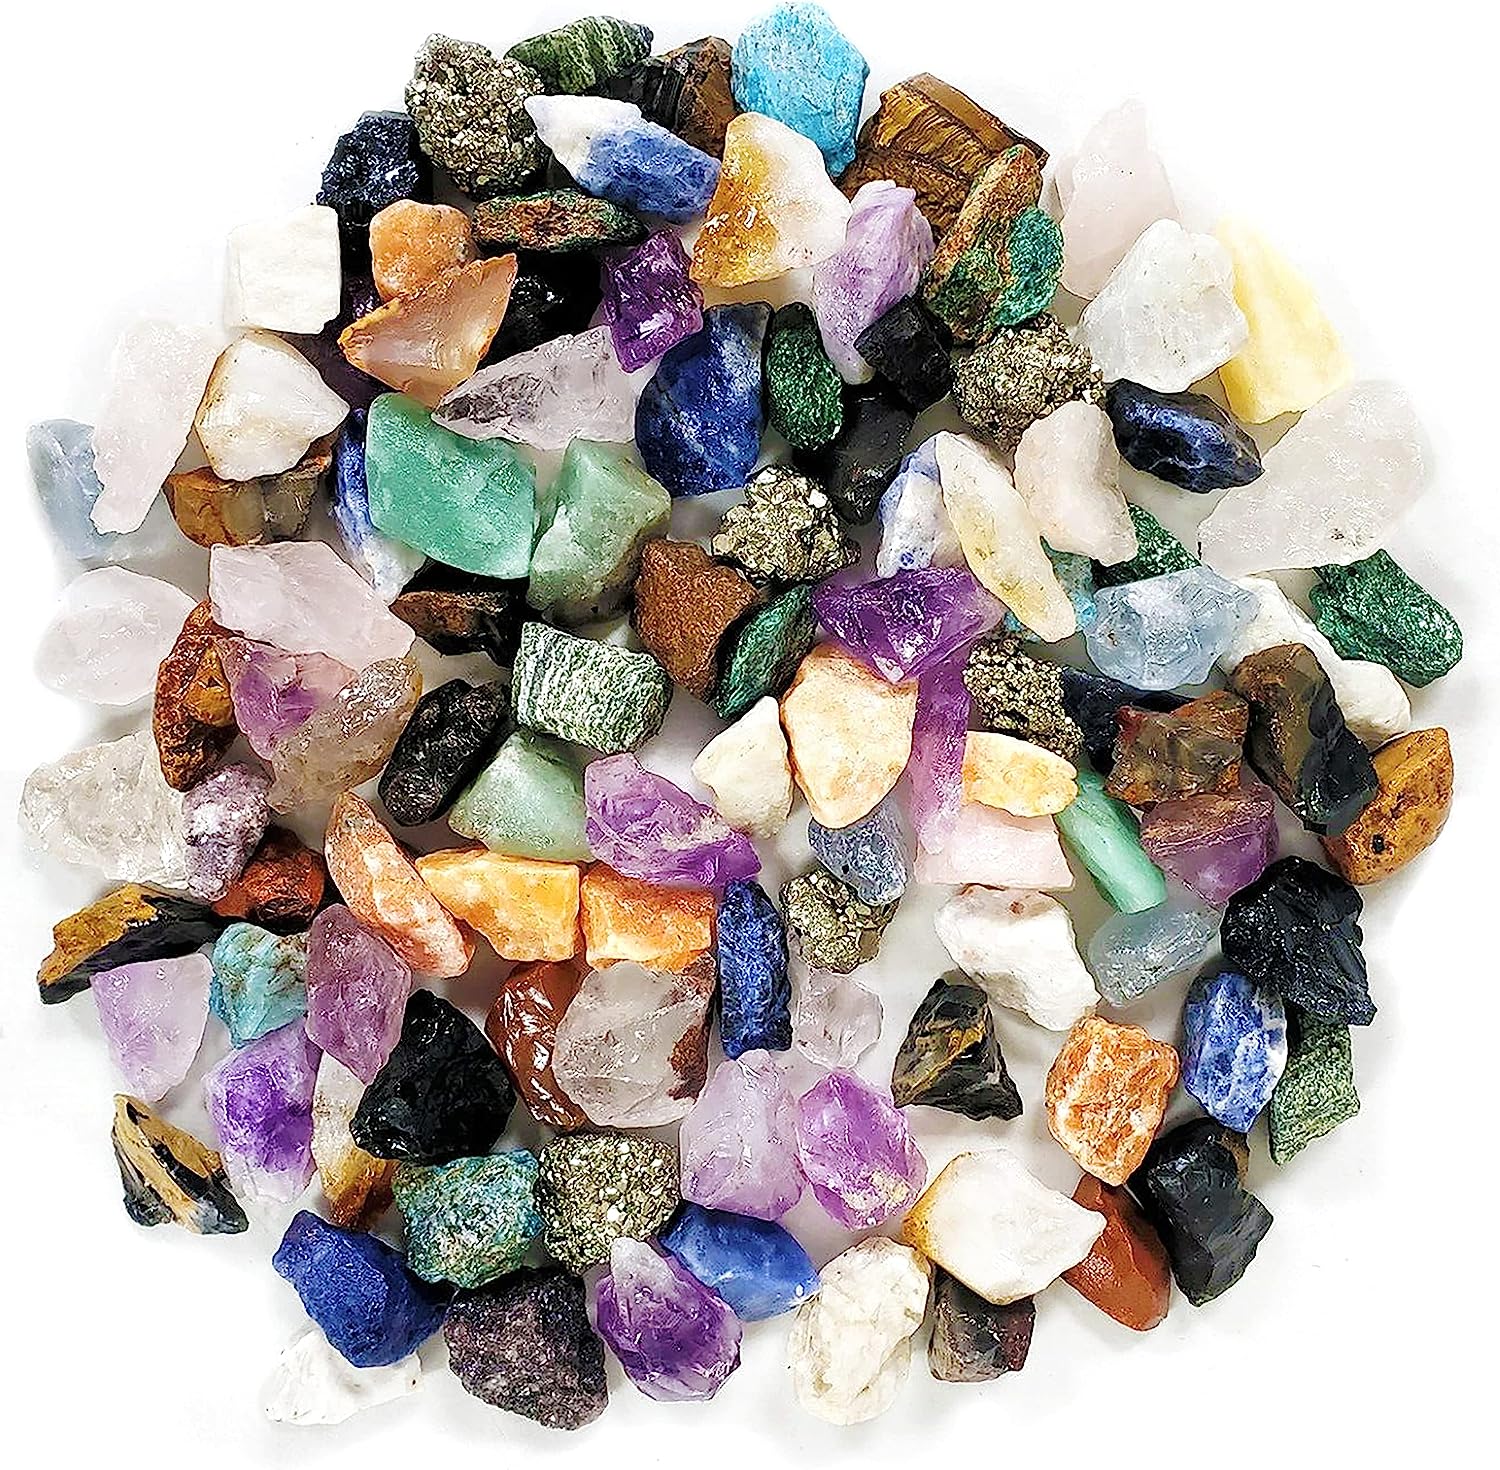 rocks, minerals, fossils